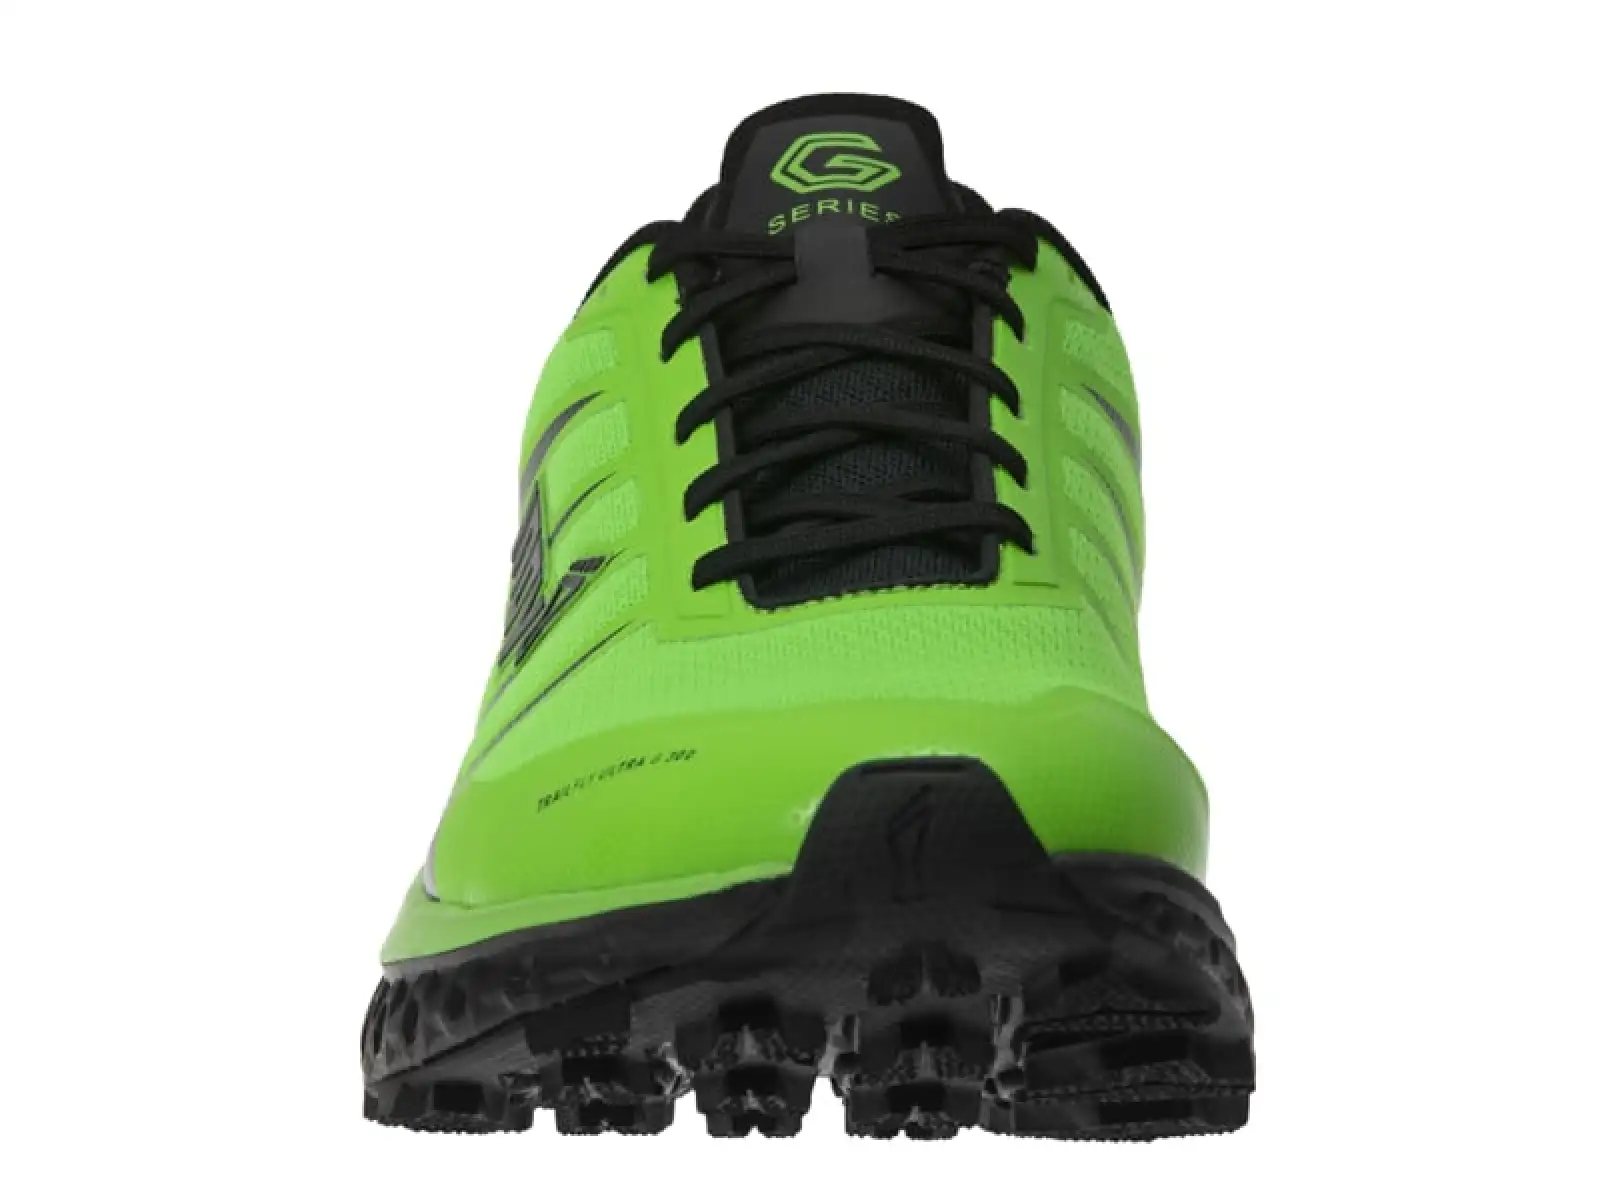 Inov-8 Trailfly Ultra G 300 Max pánské běžecké boty zelená/černá